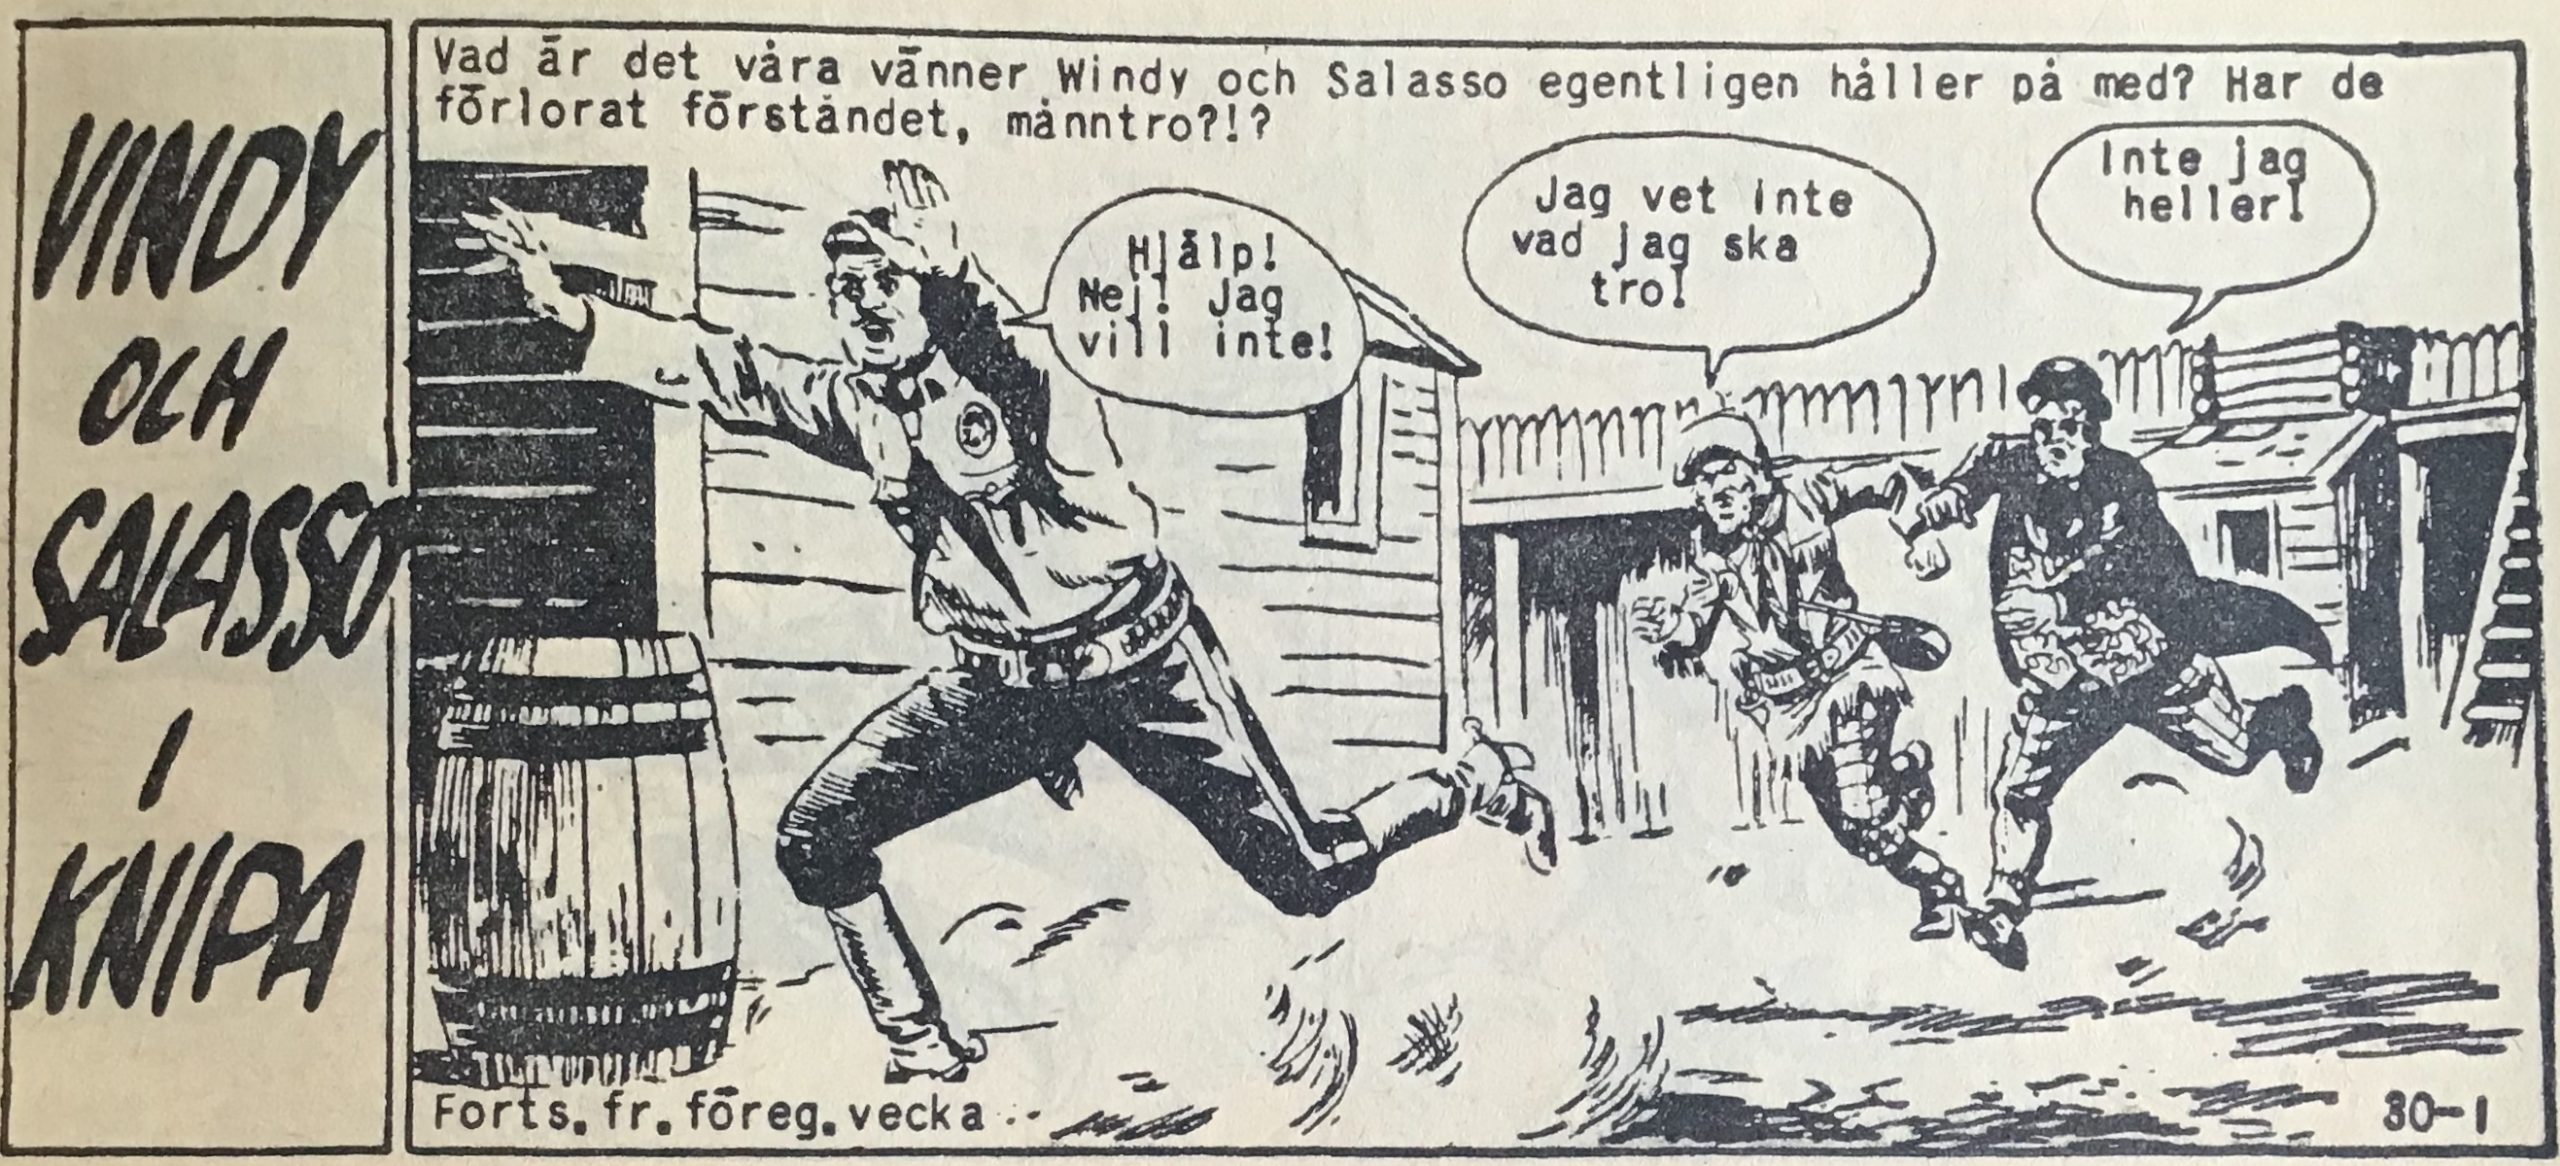 Den fartfyllda inledningen till Windy och Salasso i knipa, ur Vild Västern nr 30. 1959